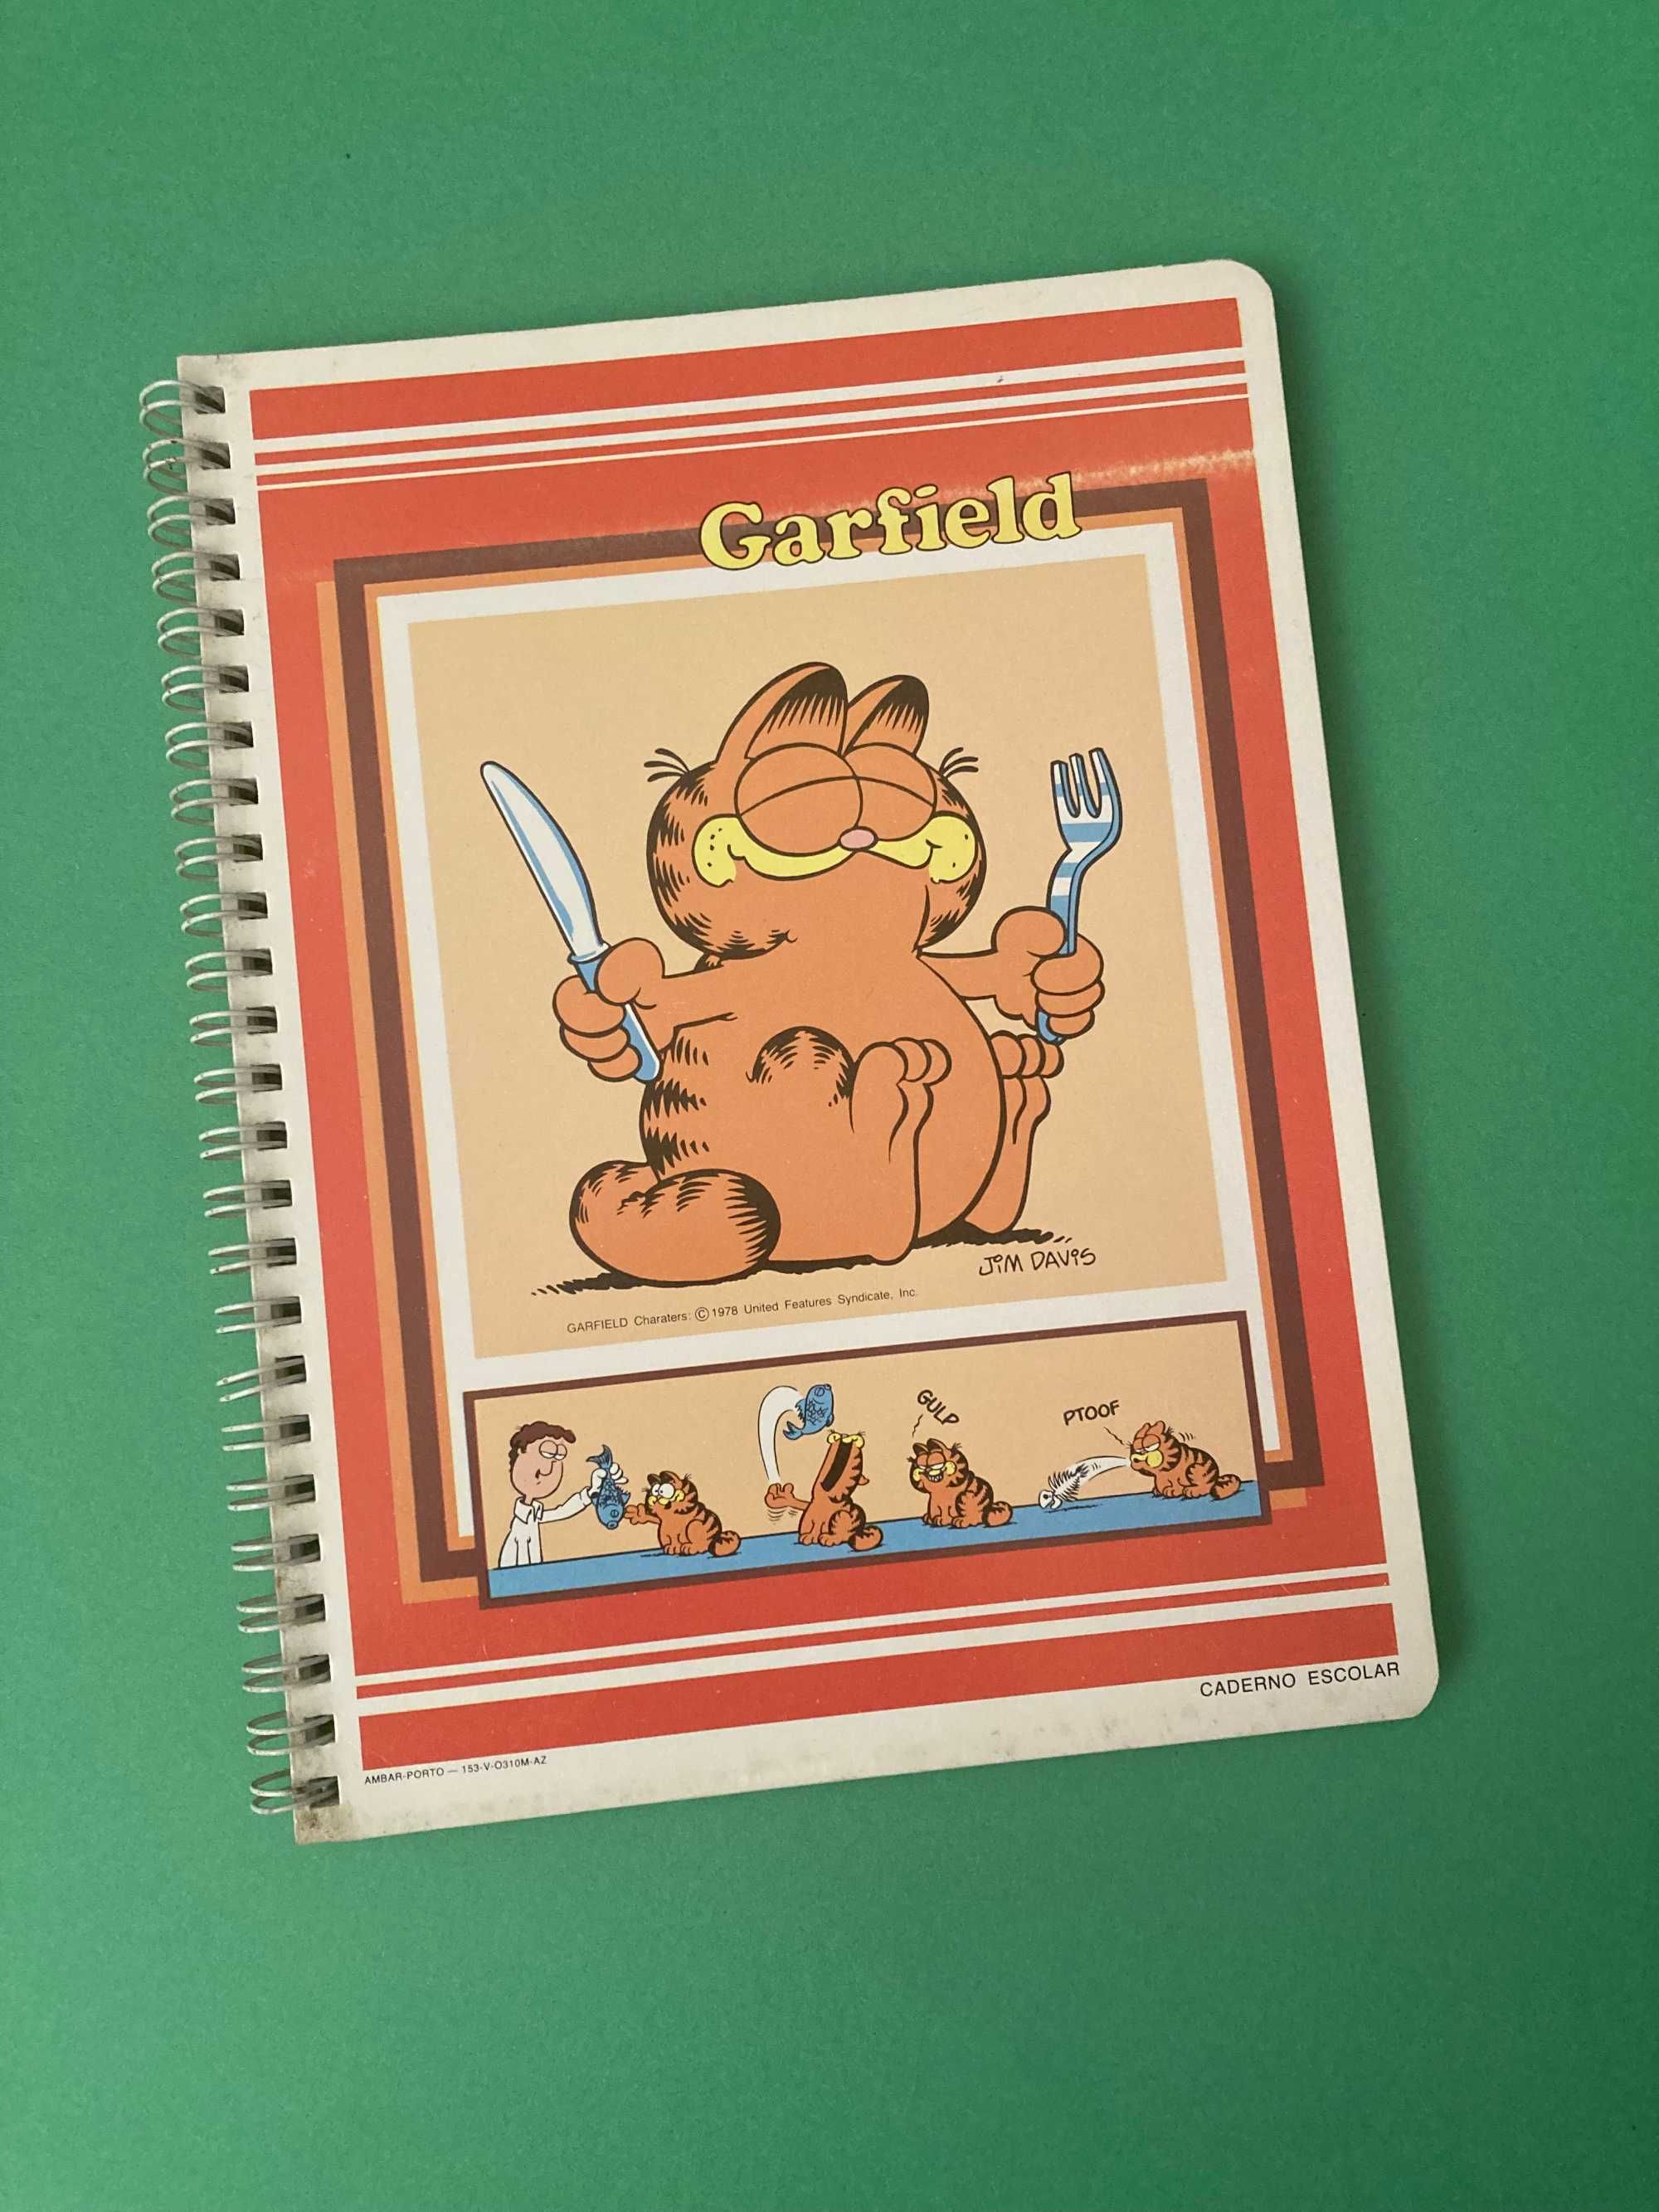 Raros Cadernos Escolares do Garfield Anos 80 Ambar Preço Unitário